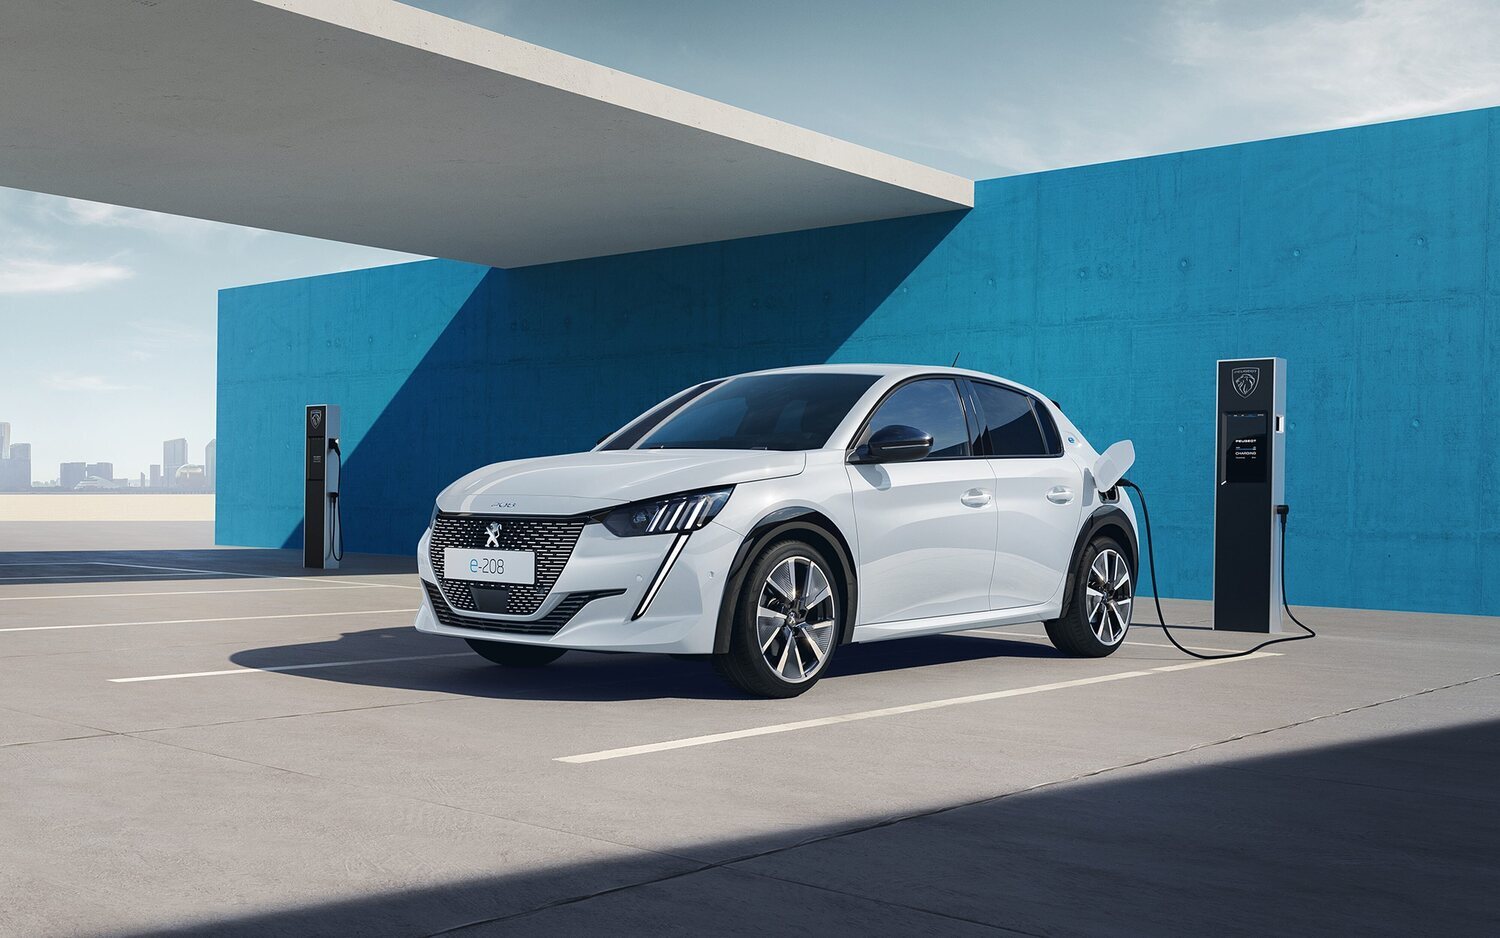 Peugeot da un paso más y adelante su nueva estrategia eléctrica